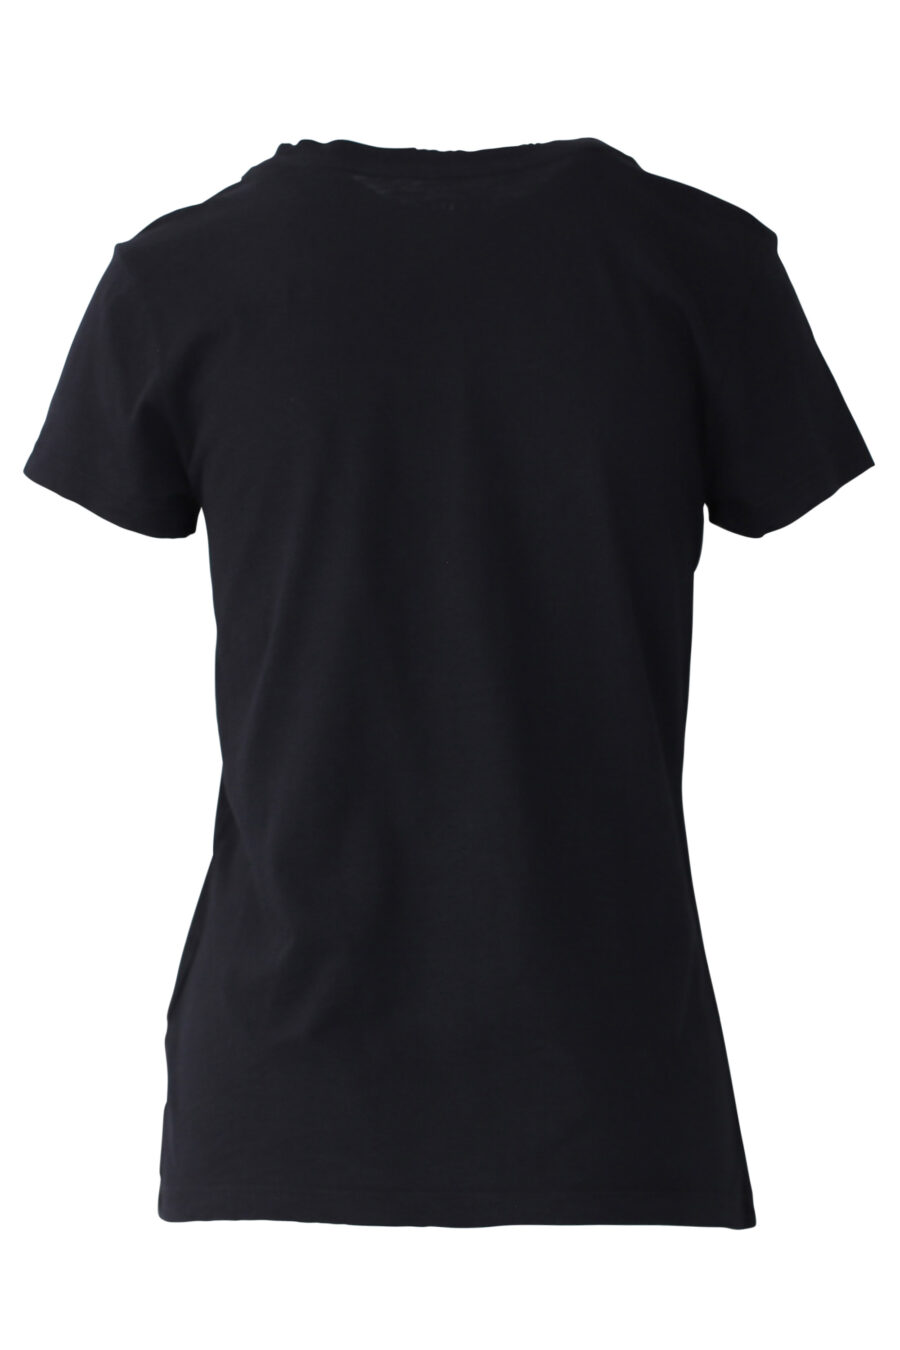 Black T-shirt with rhinestone embroidered maxilogo - IMG 0662